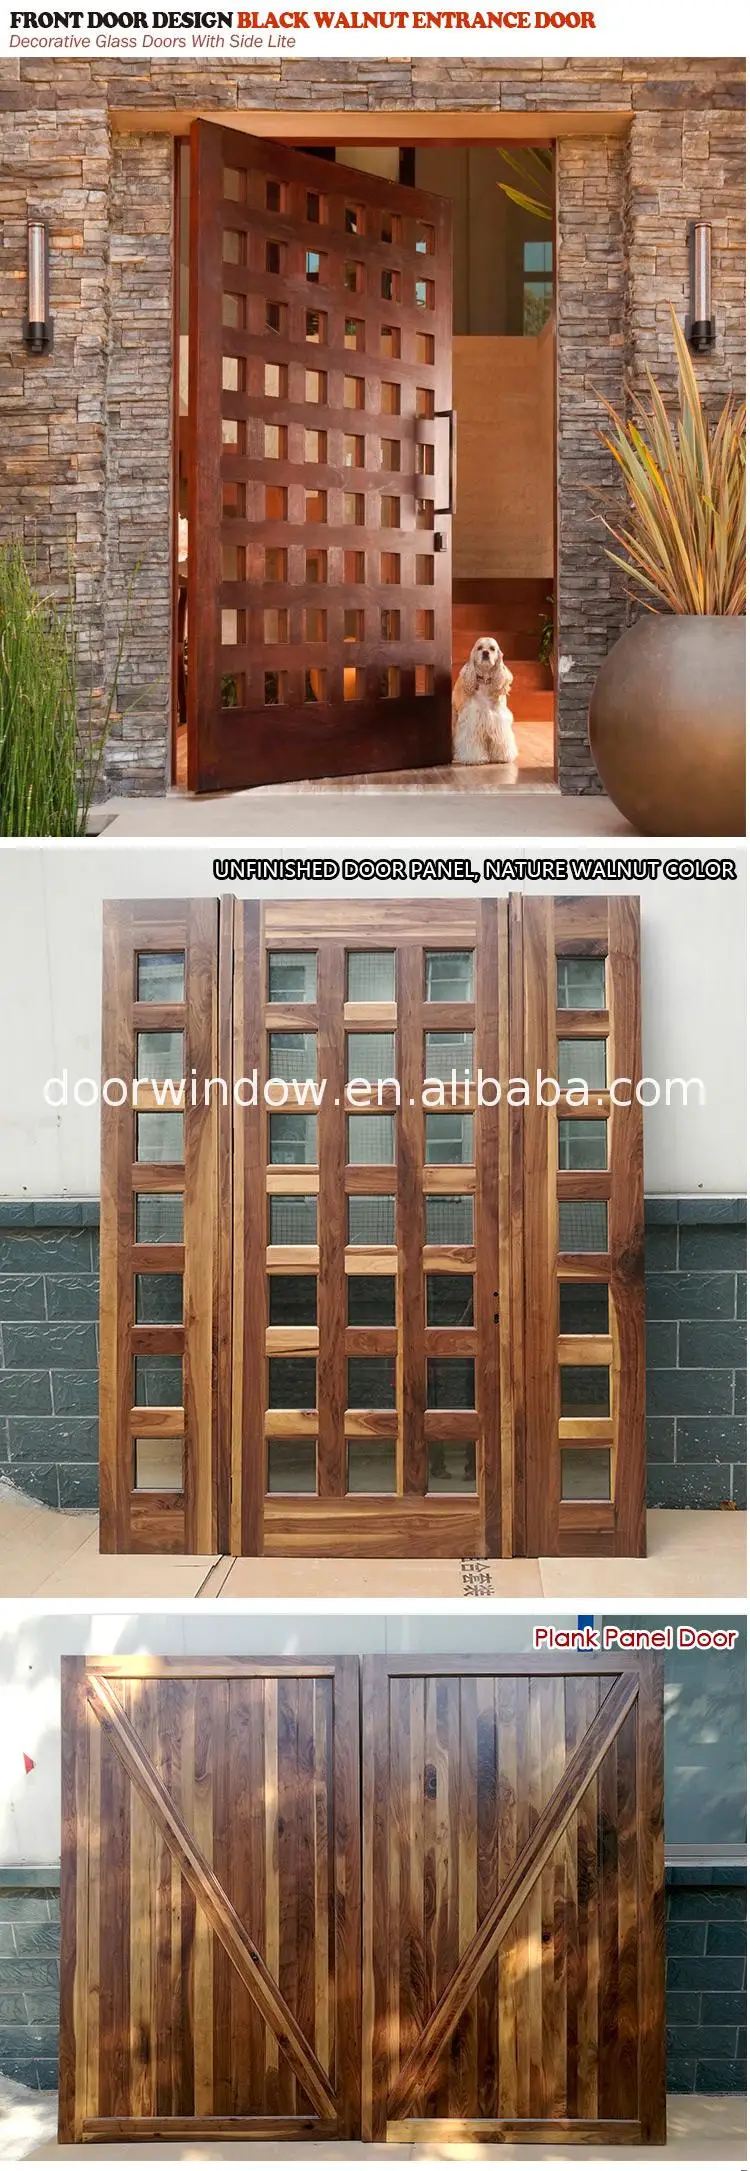 Factory price Manufacturer Supplier latest wooden doors images wood door pictures interior